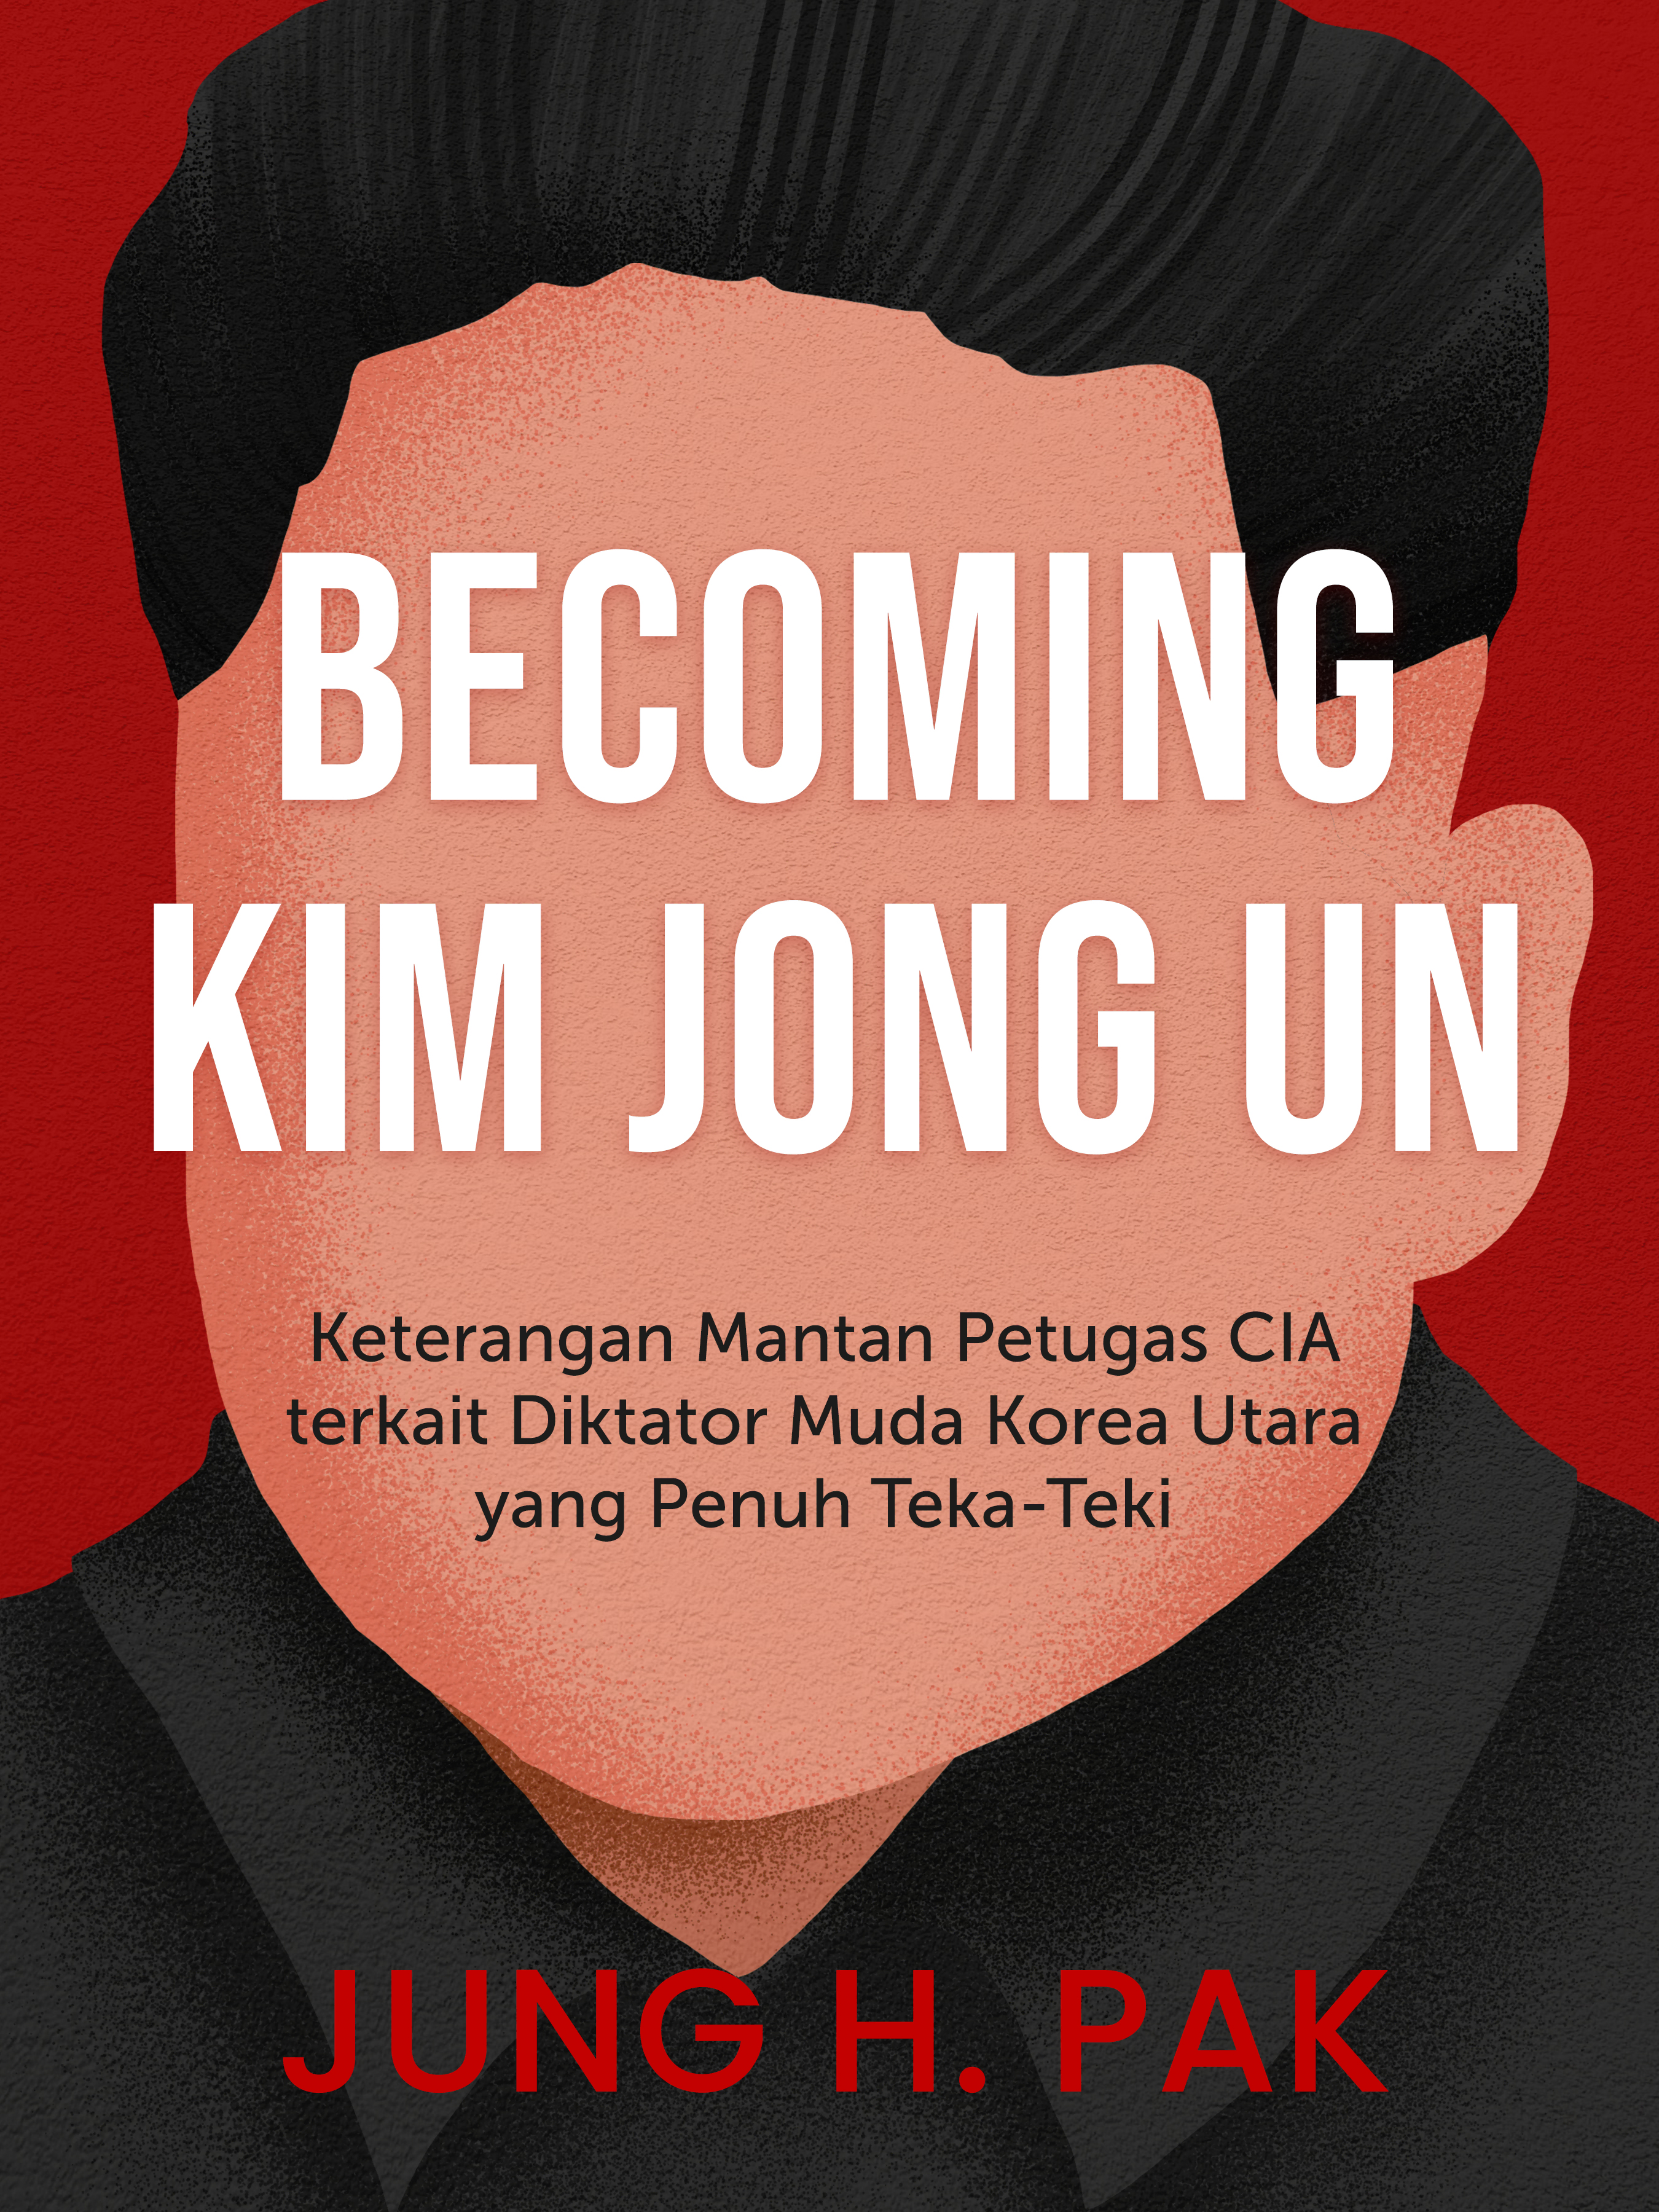 #7 Kim Jong Un ingin membangun legitimasi politik dengan bertemu para pemimpin dunia